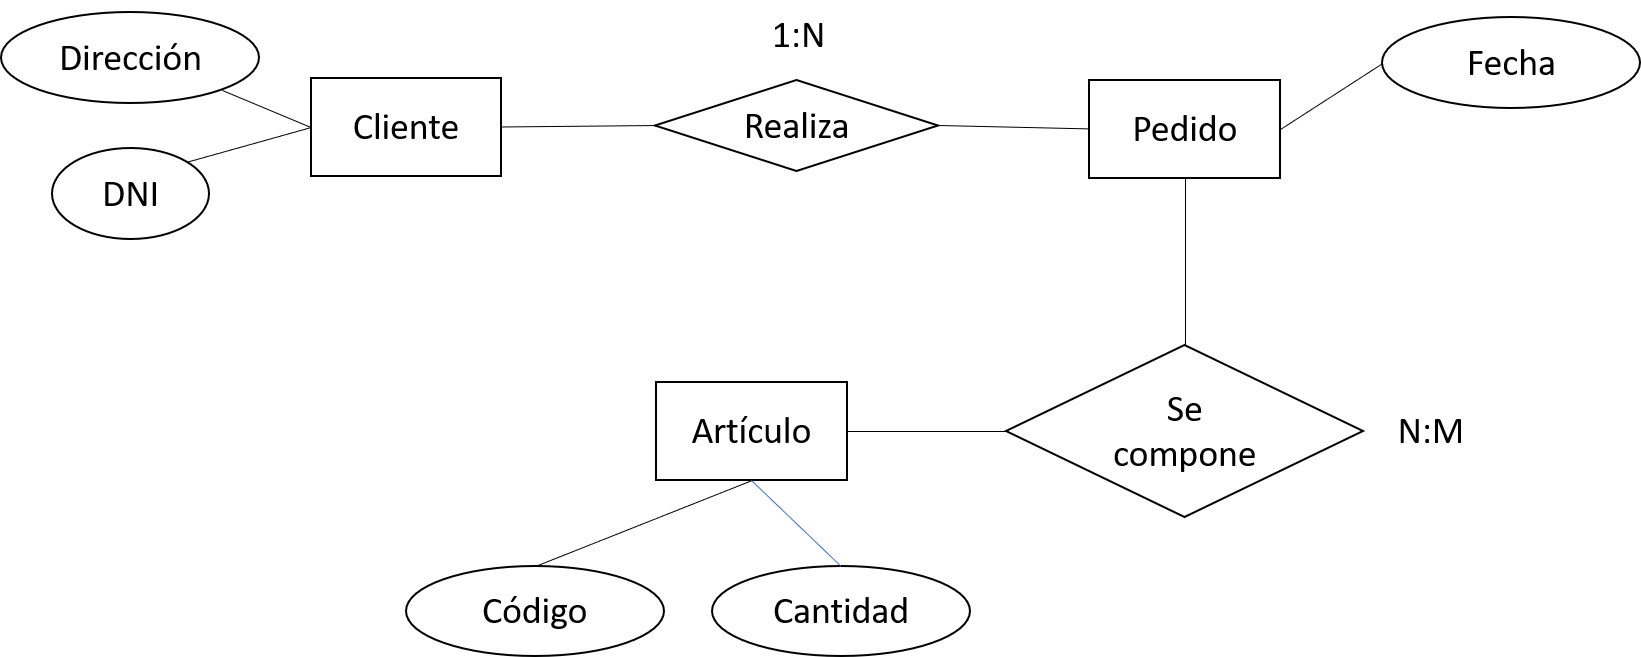 Ejemplo diagrama entidad relación